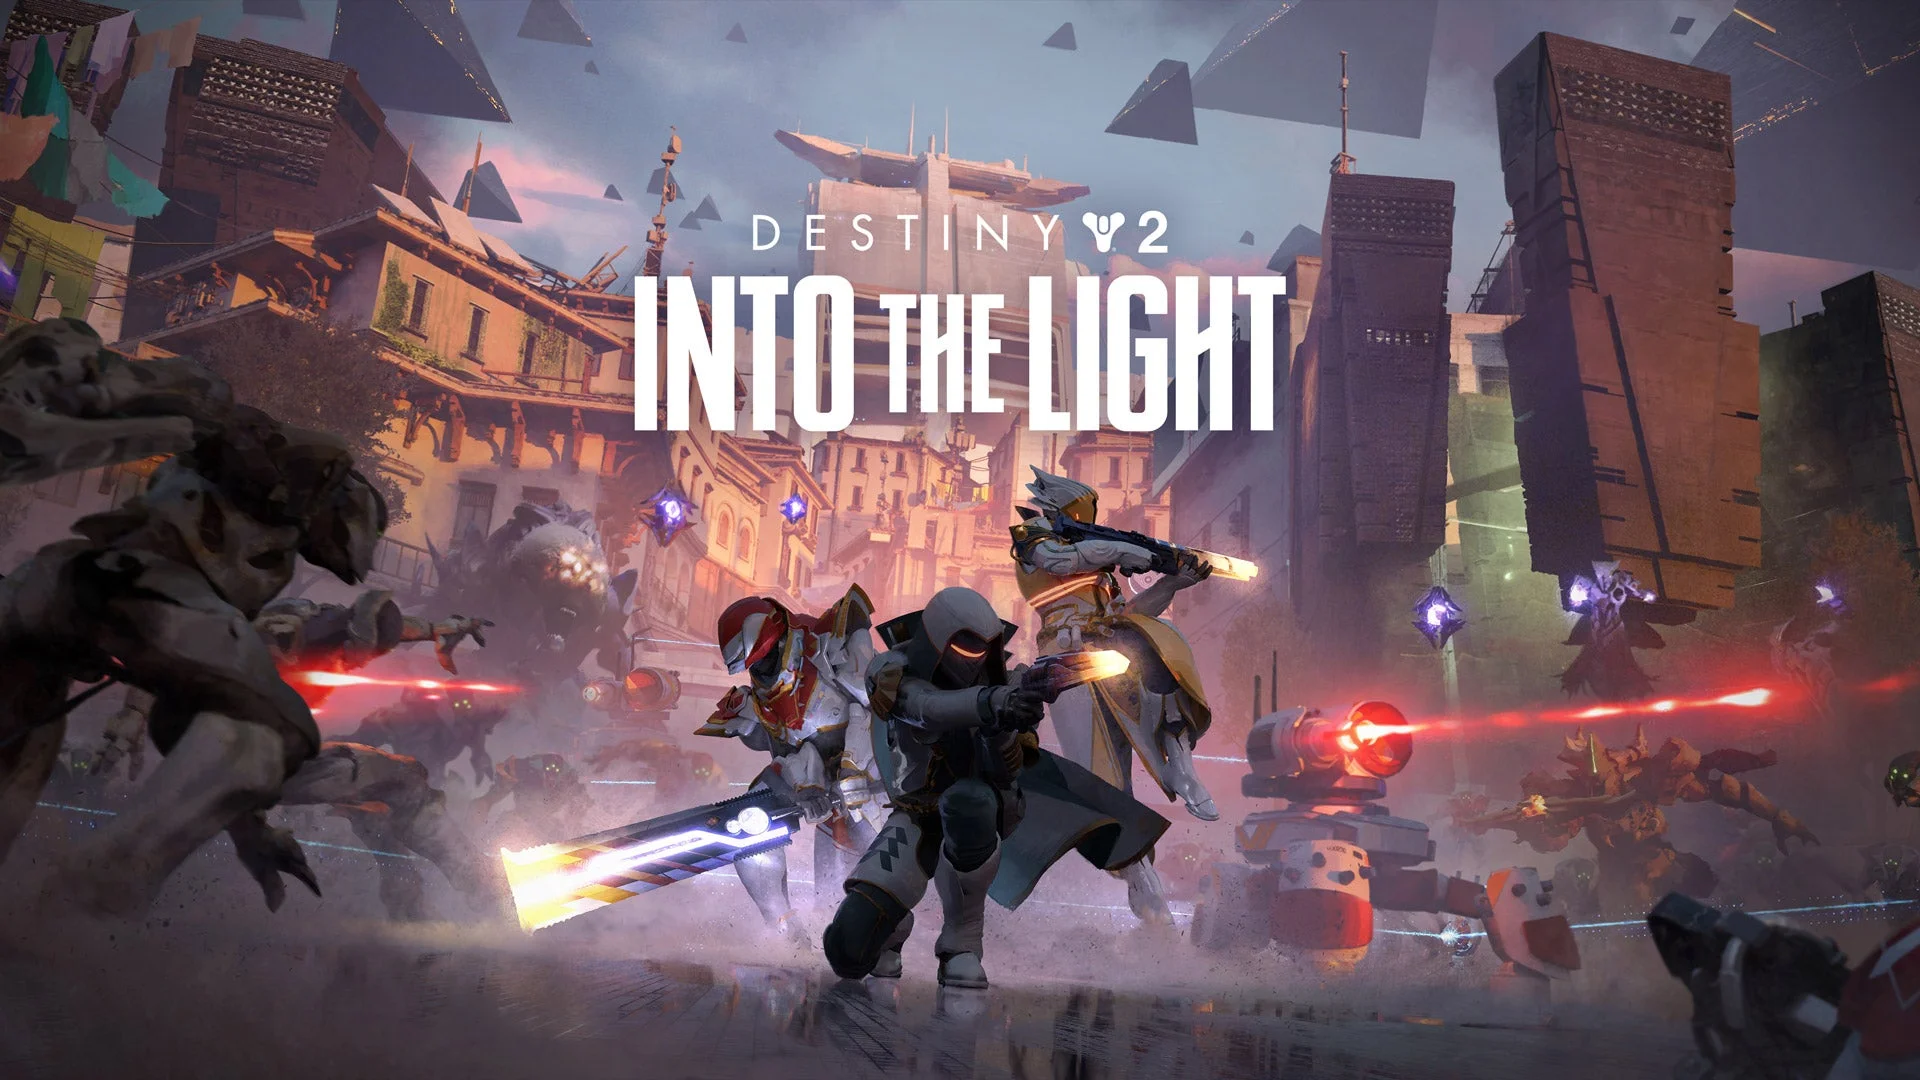 Dzisiaj, 26 marca, Destiny 2: Into the Light będzie transmitowane na żywo, pokazując nowe bronie i nową przestrzeń społecznościową